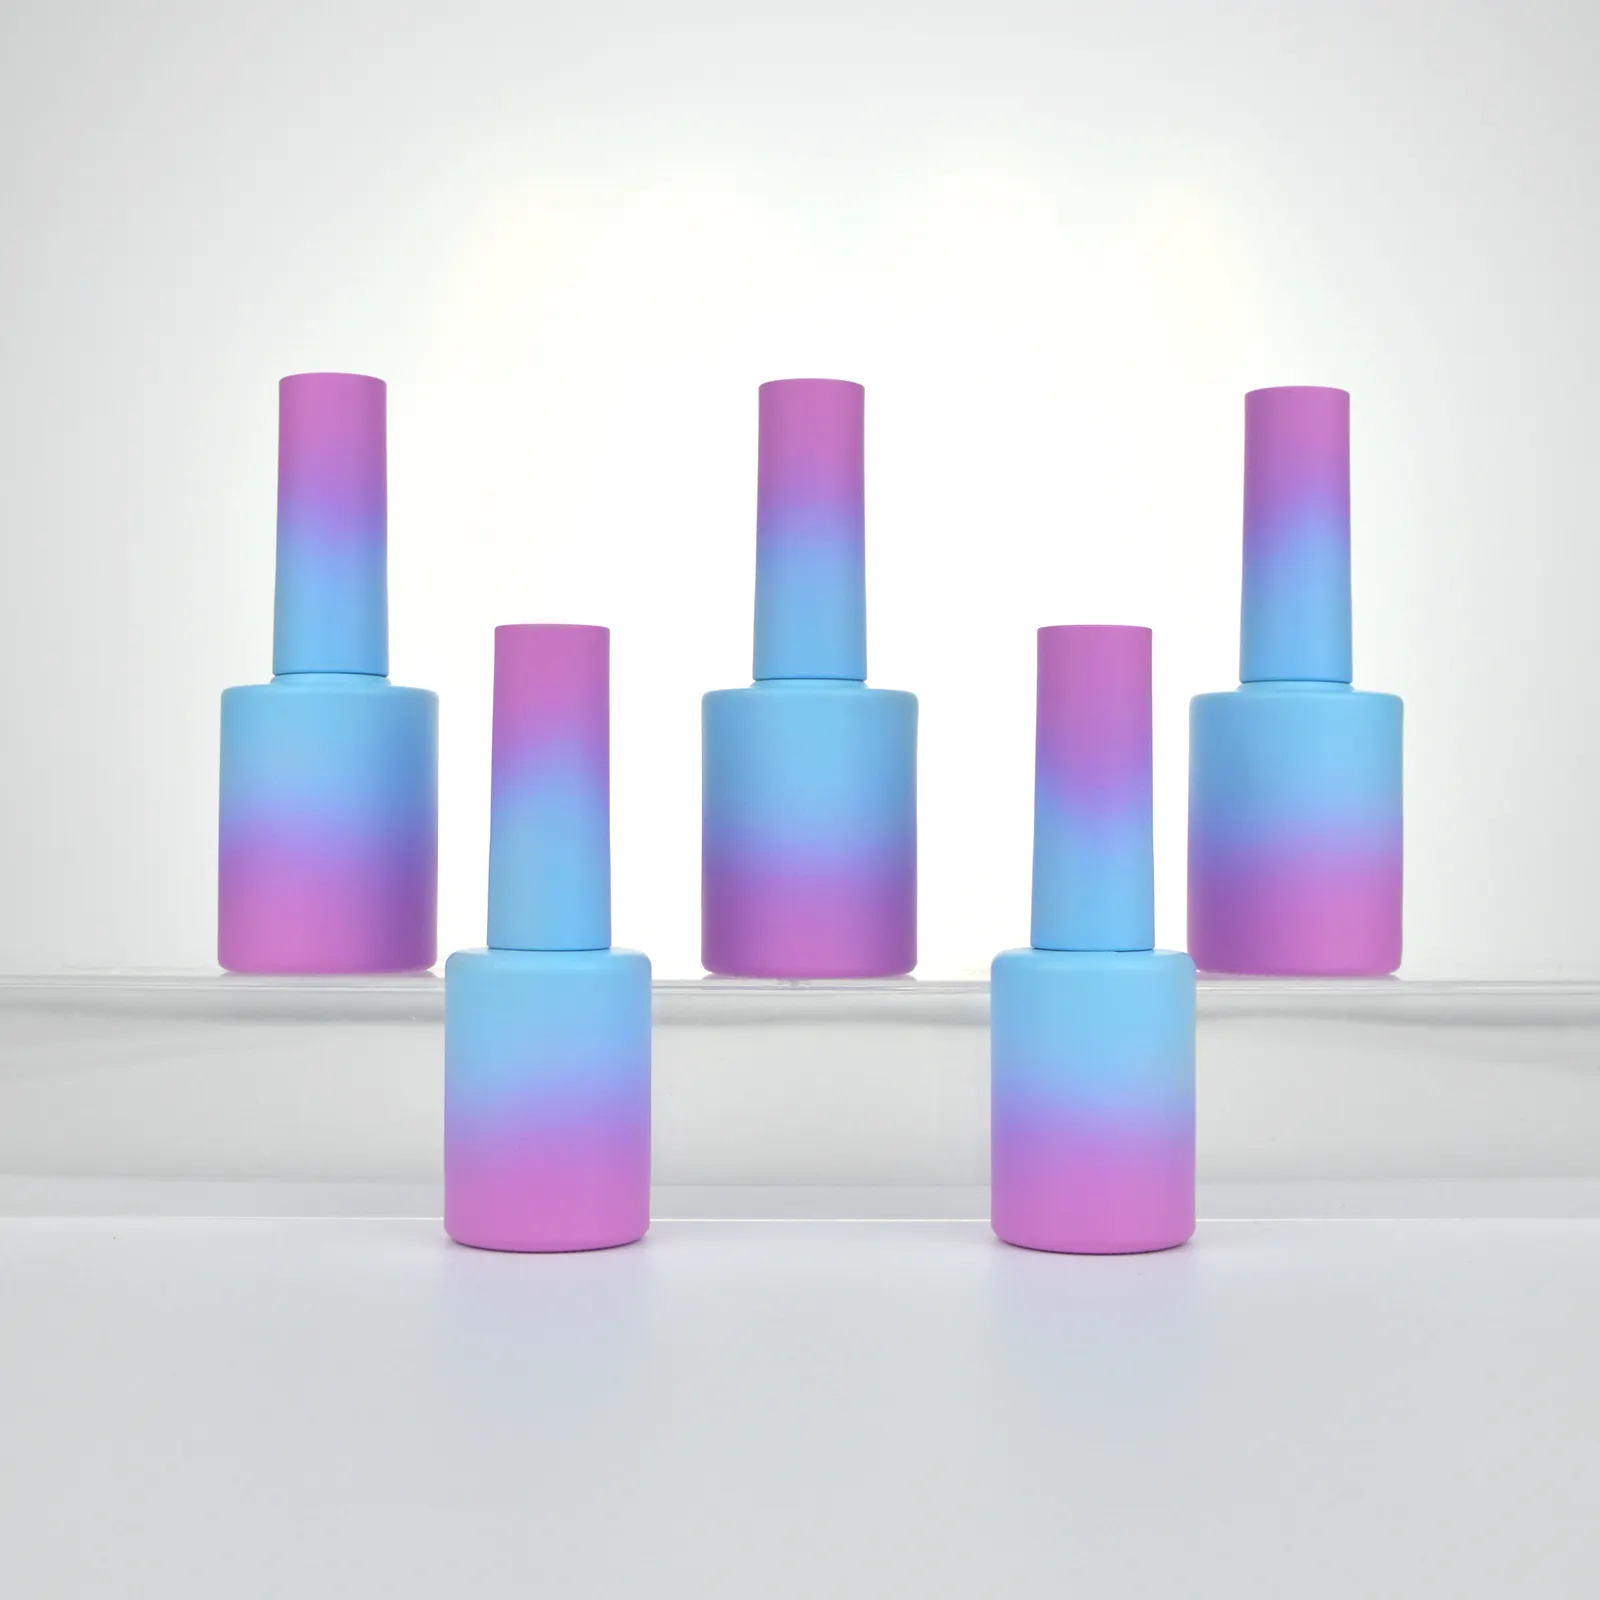 Usine 10ml personnalisé vide Uv Gel vernis à ongles bouteilles en verre avec couvercles brosse ronde bouteille en verre pour vernis à ongles